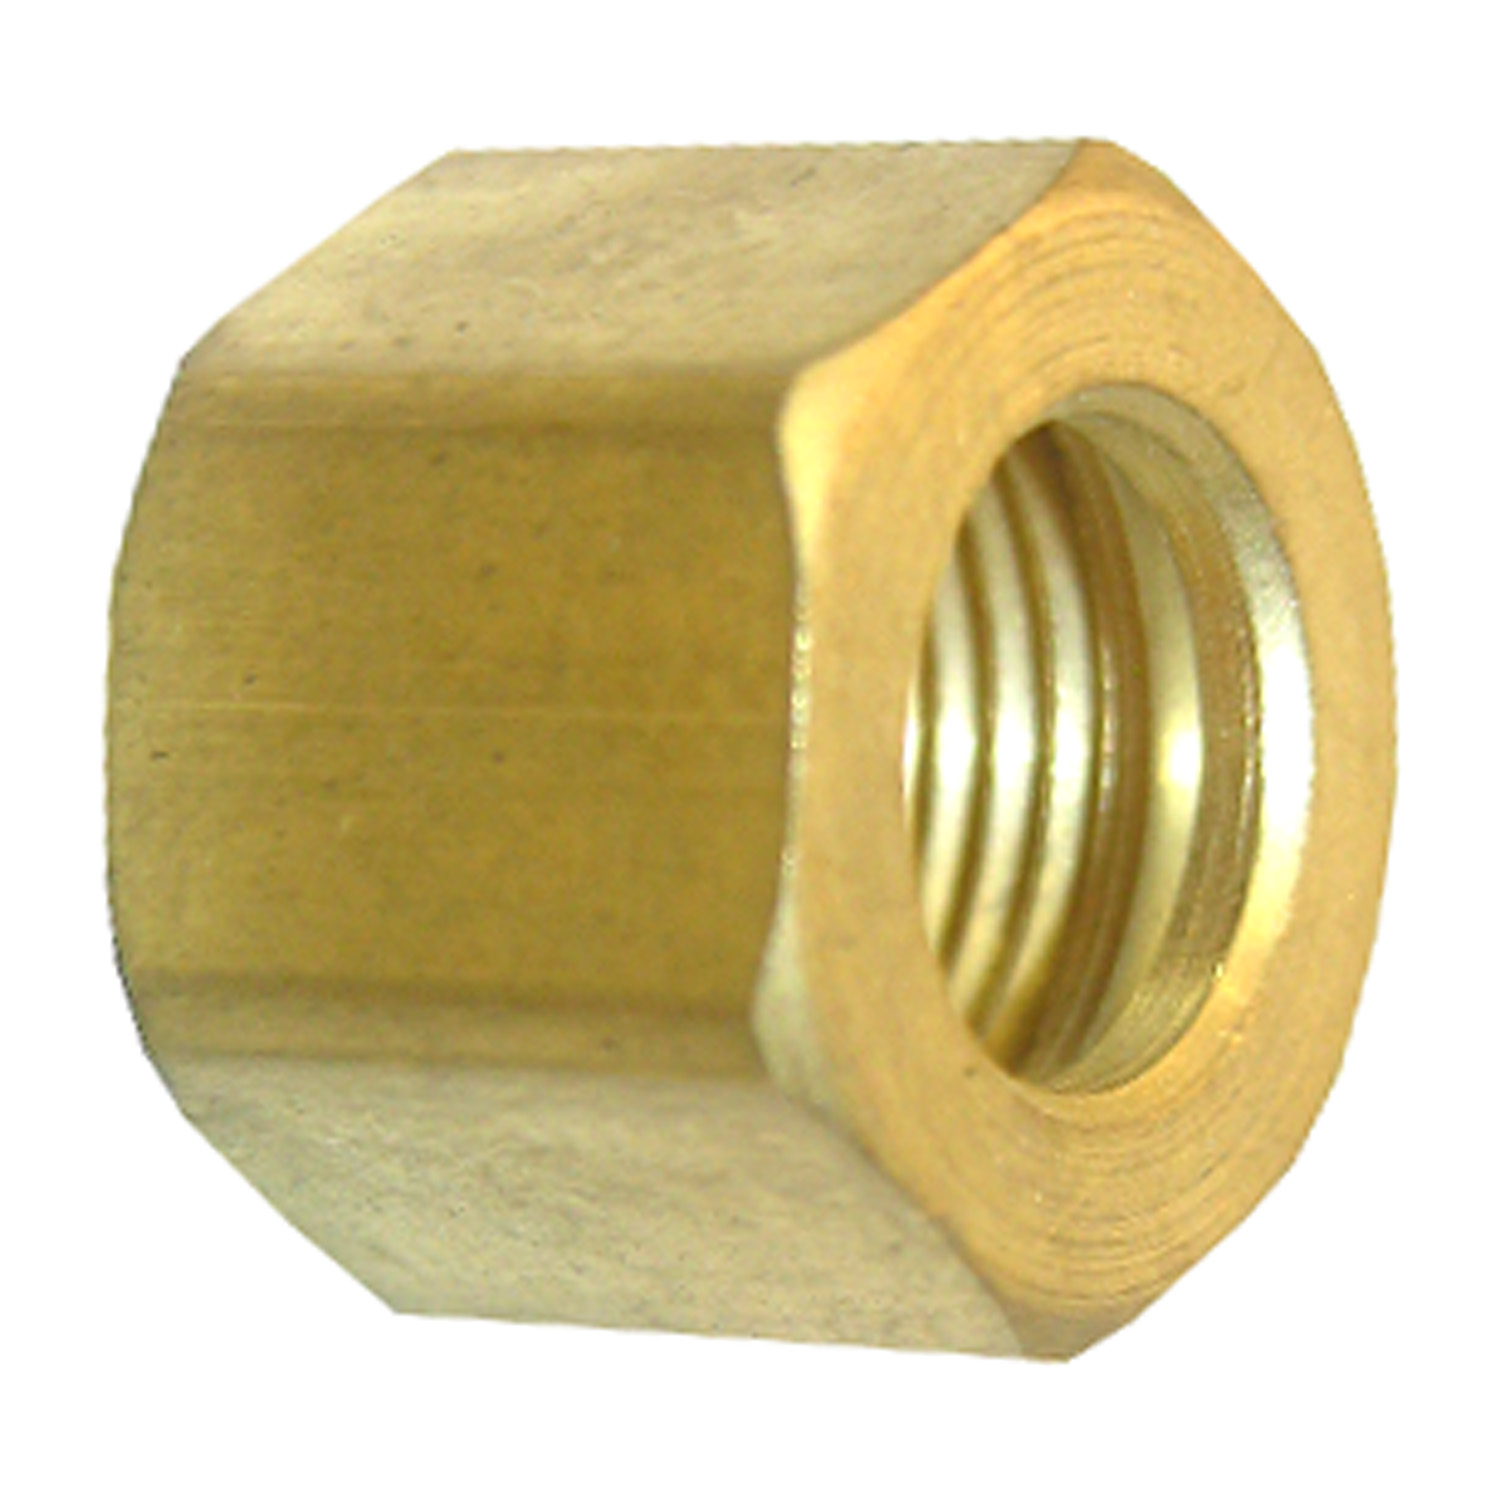 Lasco 17-6111 Nut, 1/4 in, Compression, Brass